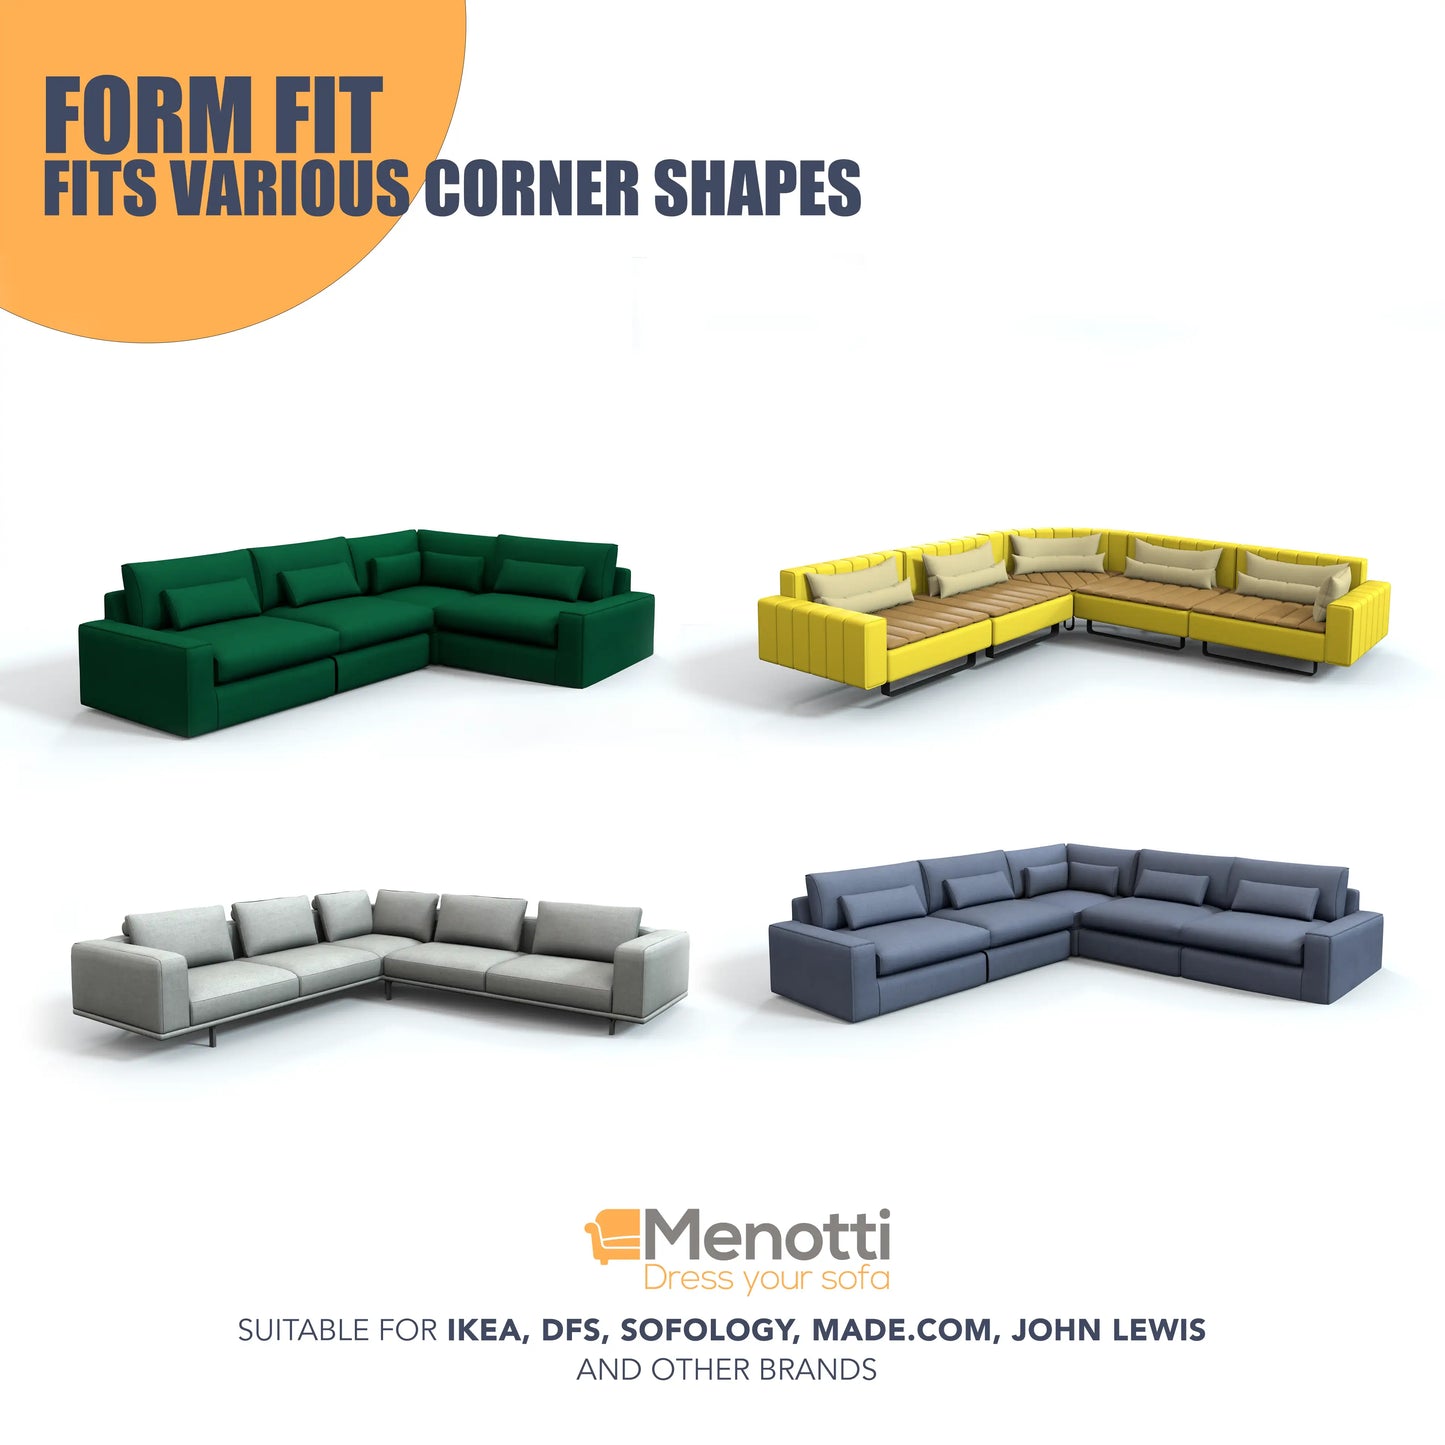 Corner Sofa Cover - Choco, Microfibra